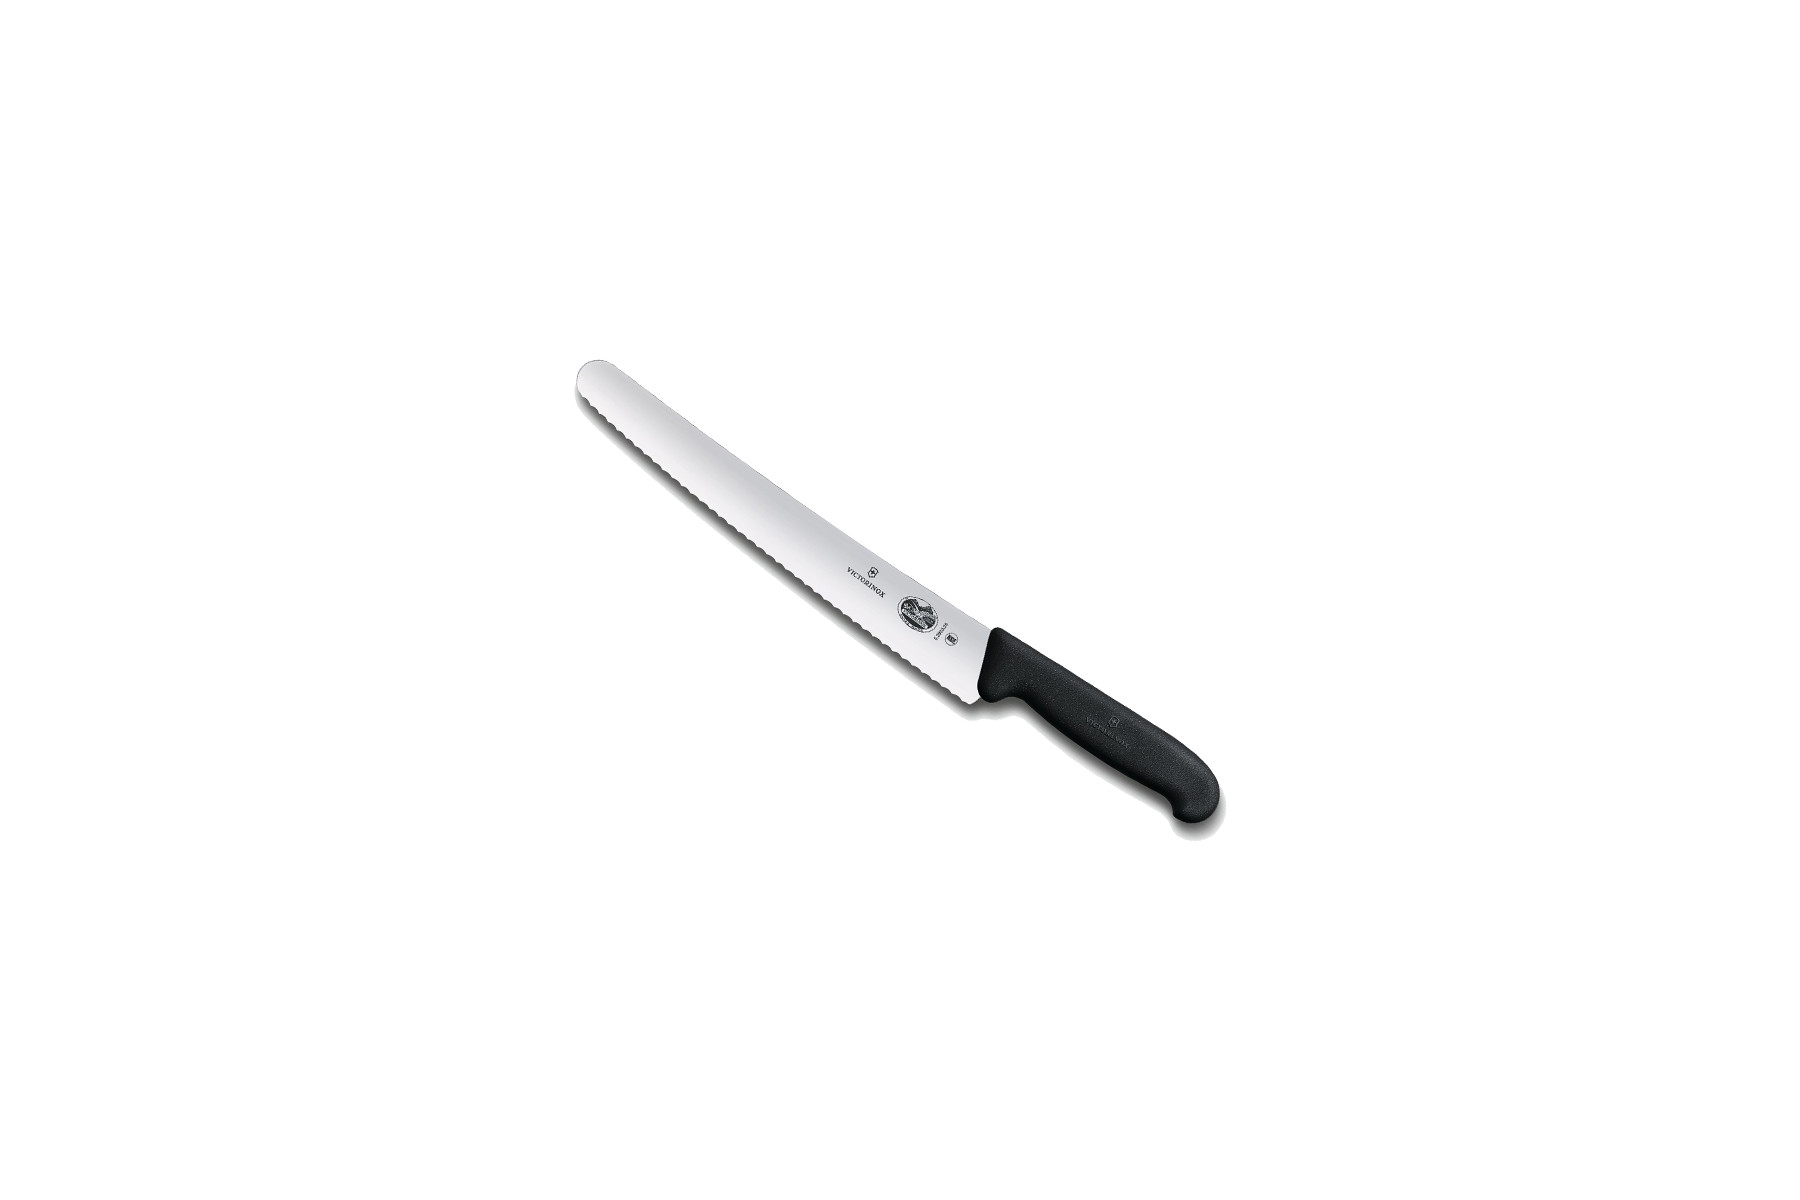 Couteau pâtissier / traiteur Victorinox lame 26 cm dentée - manche noir Fibrox